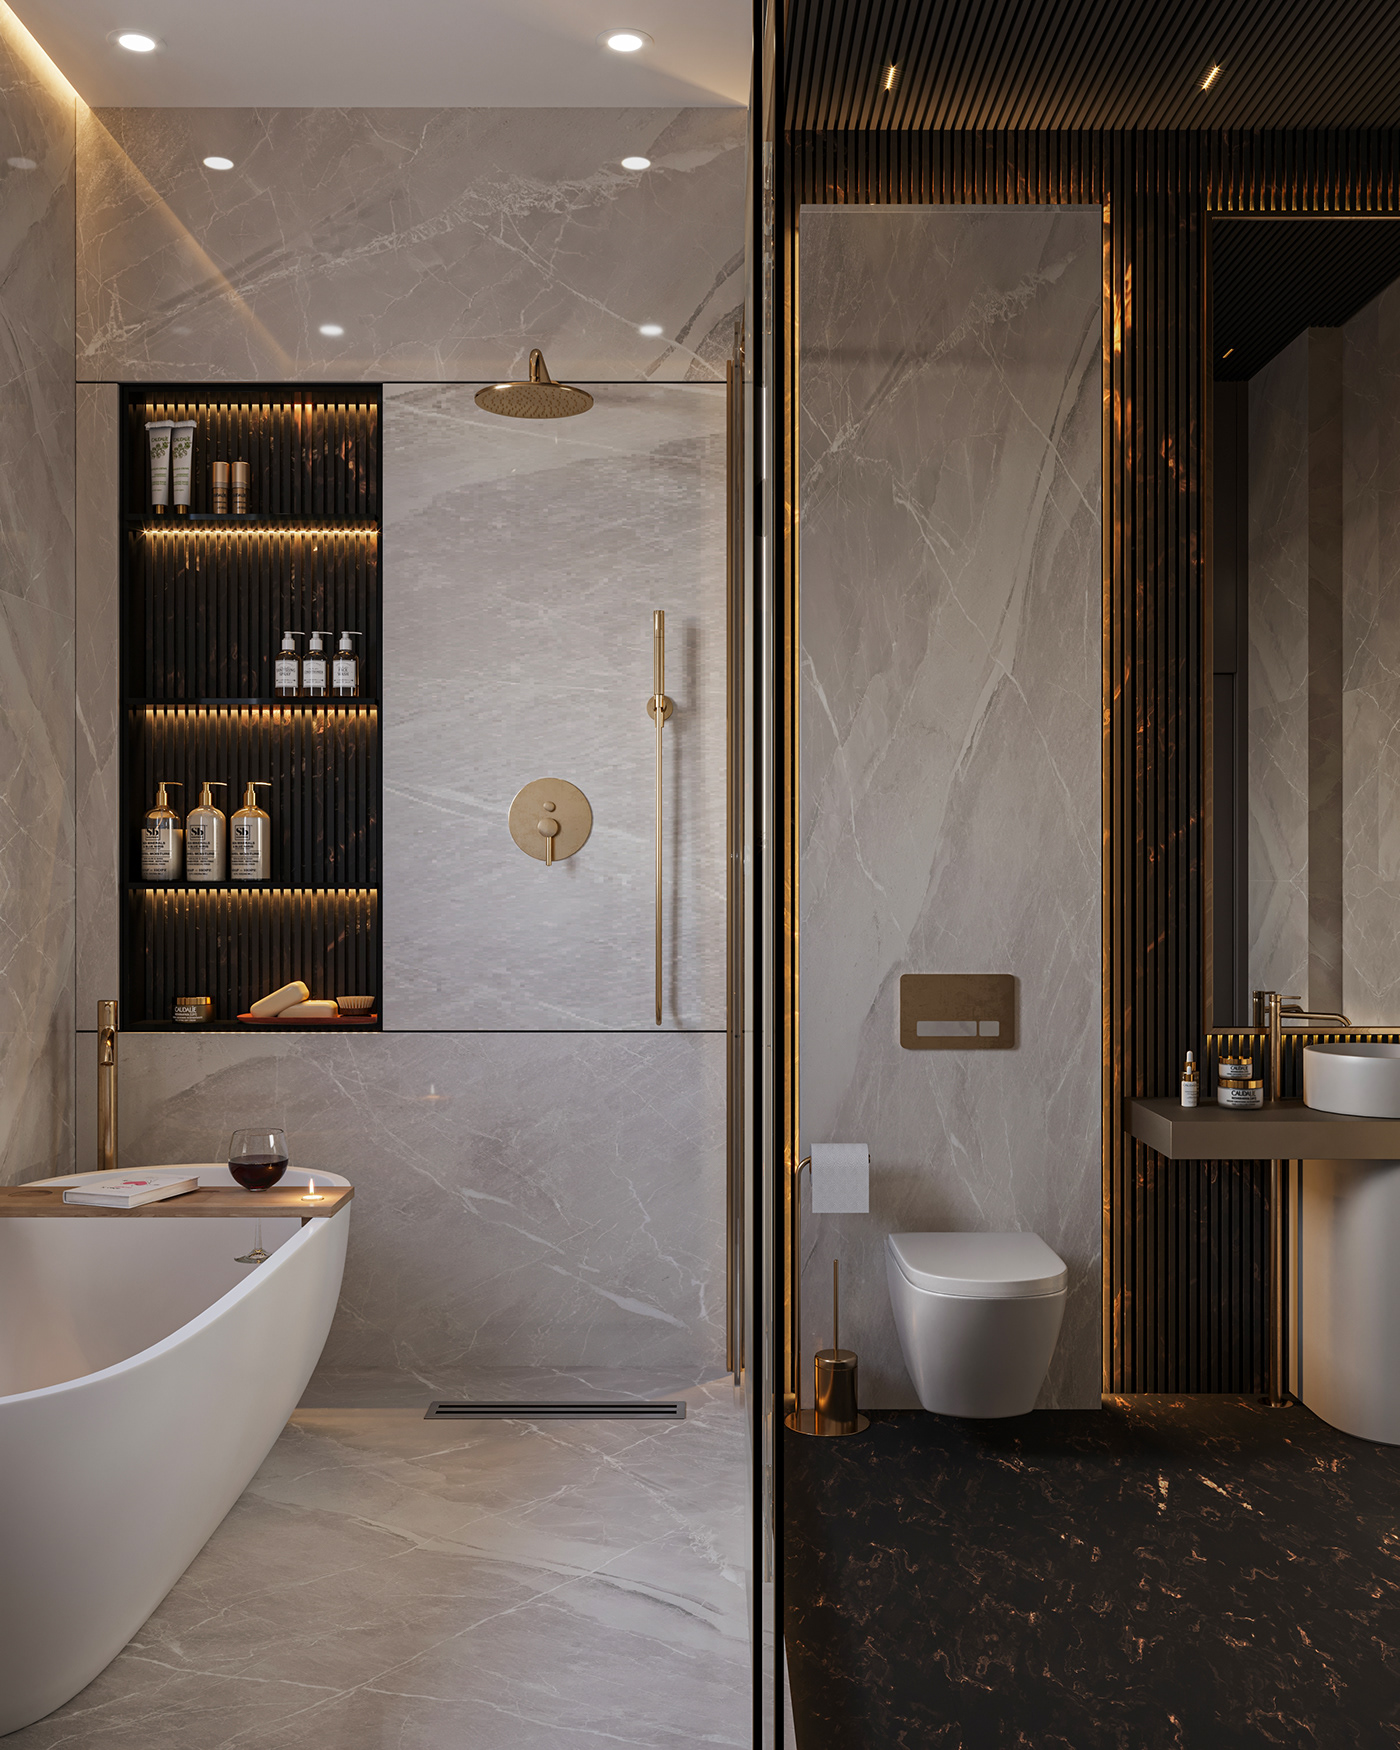 architecture modern Classic luxury bathroom CGI Interior exterior design decorative